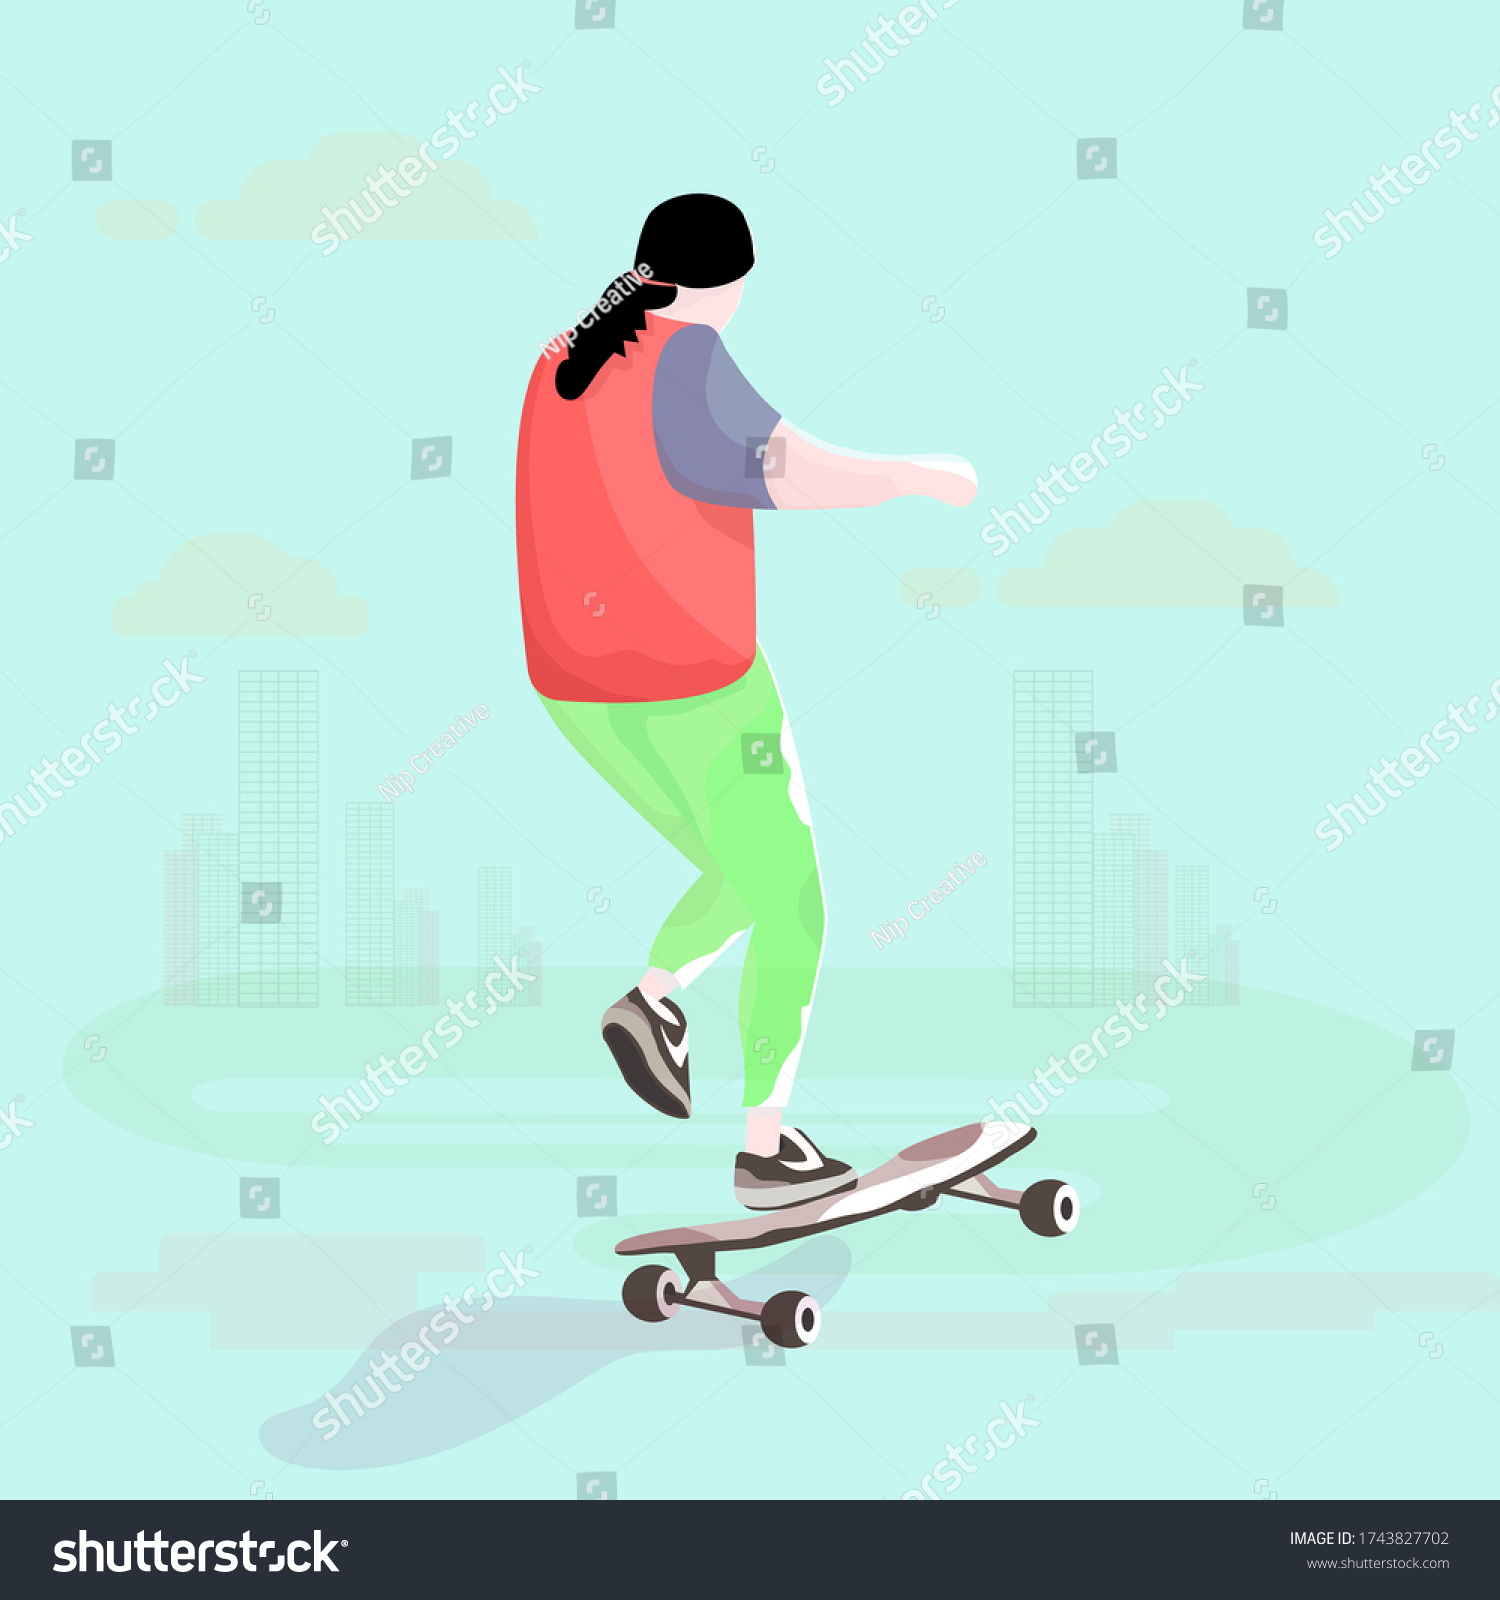 famous female skateboarders